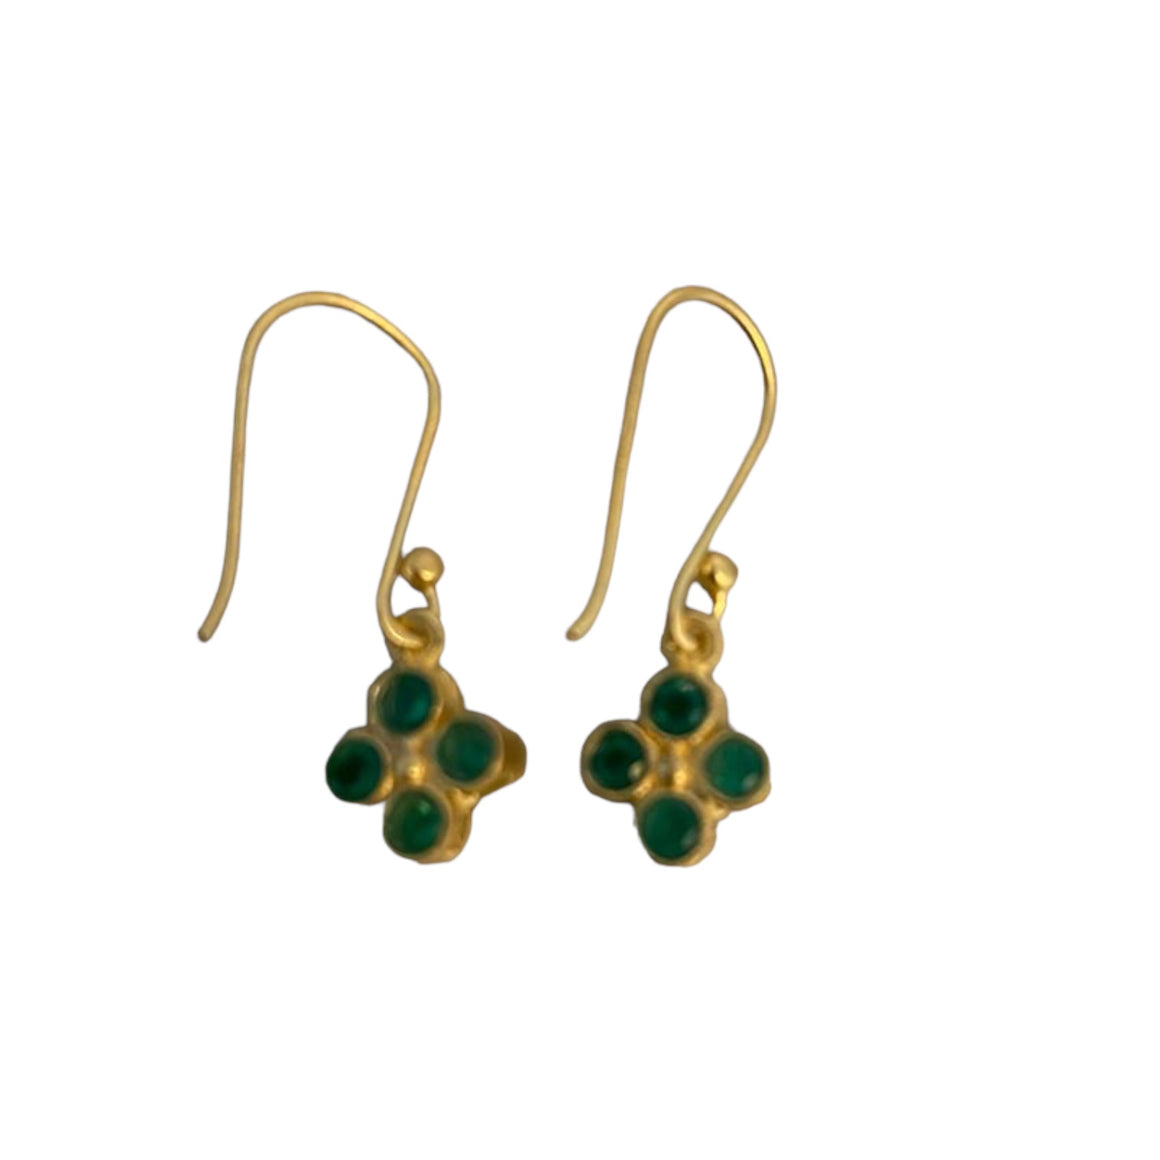 Four Stone flower earring in Green Onyx